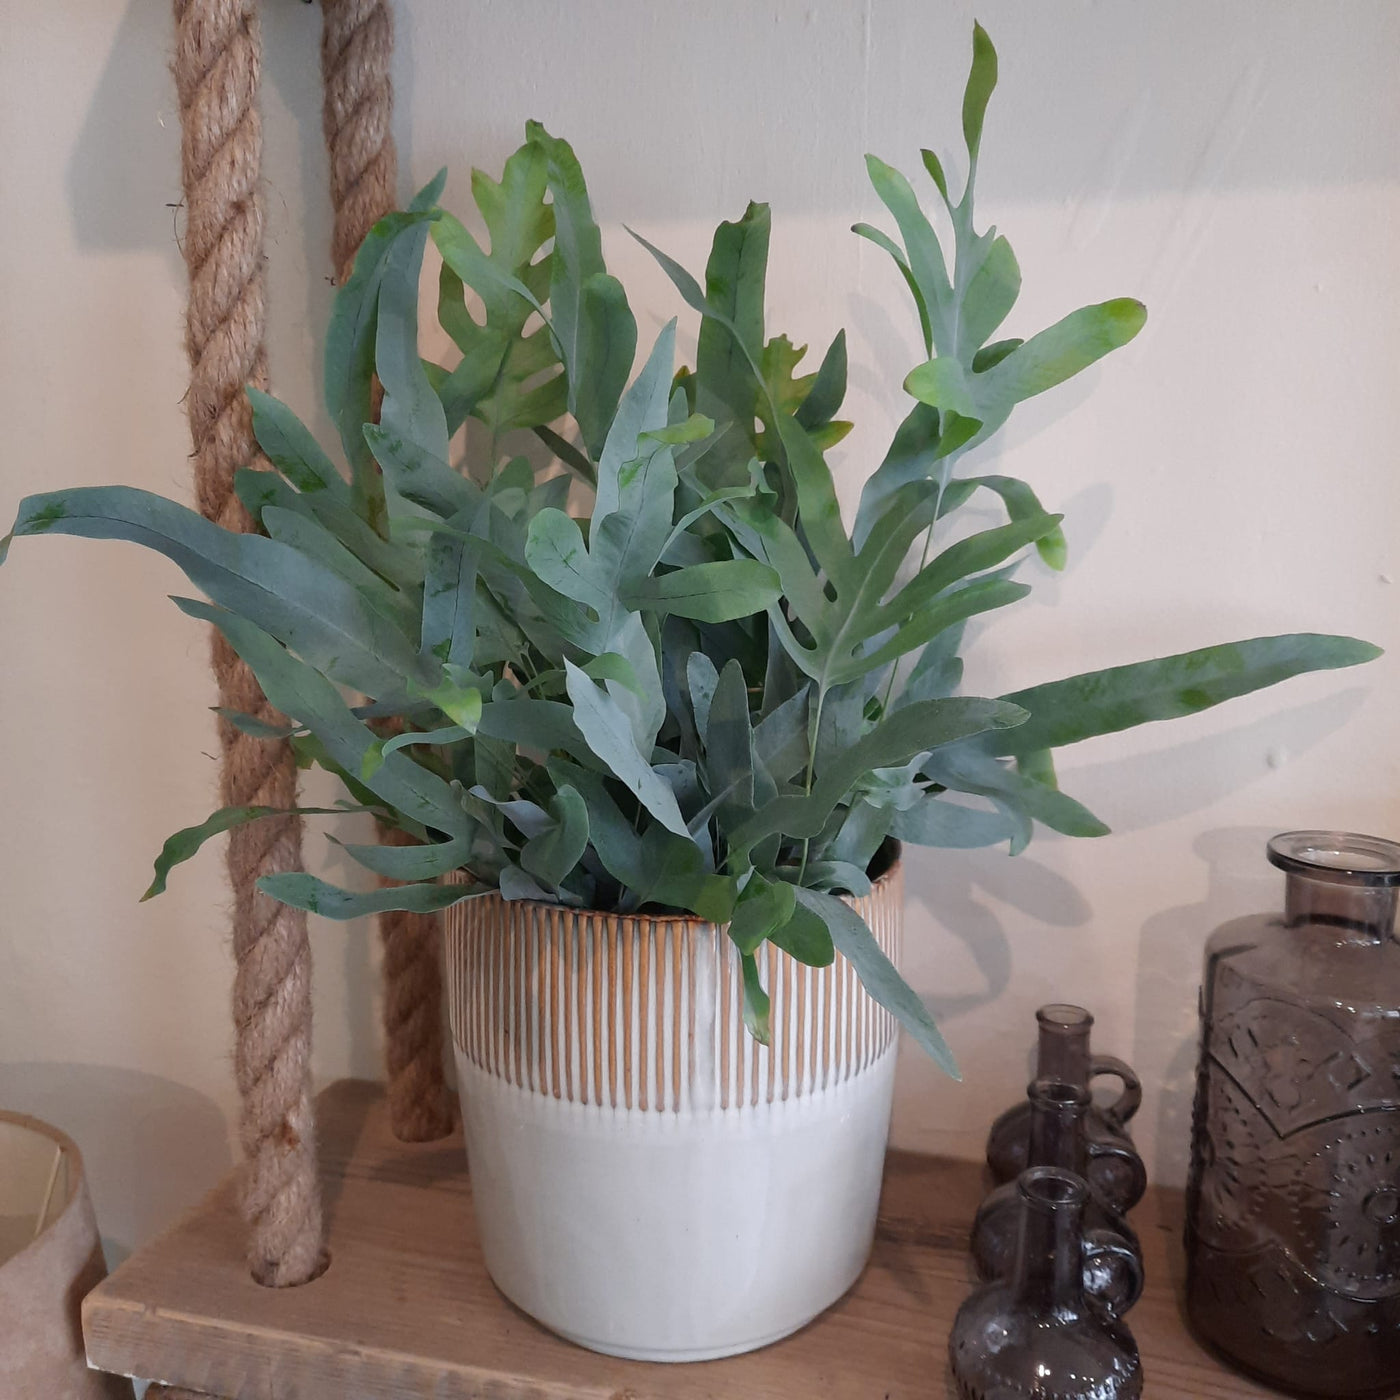 Blue star indoor fern in a ceramic pot